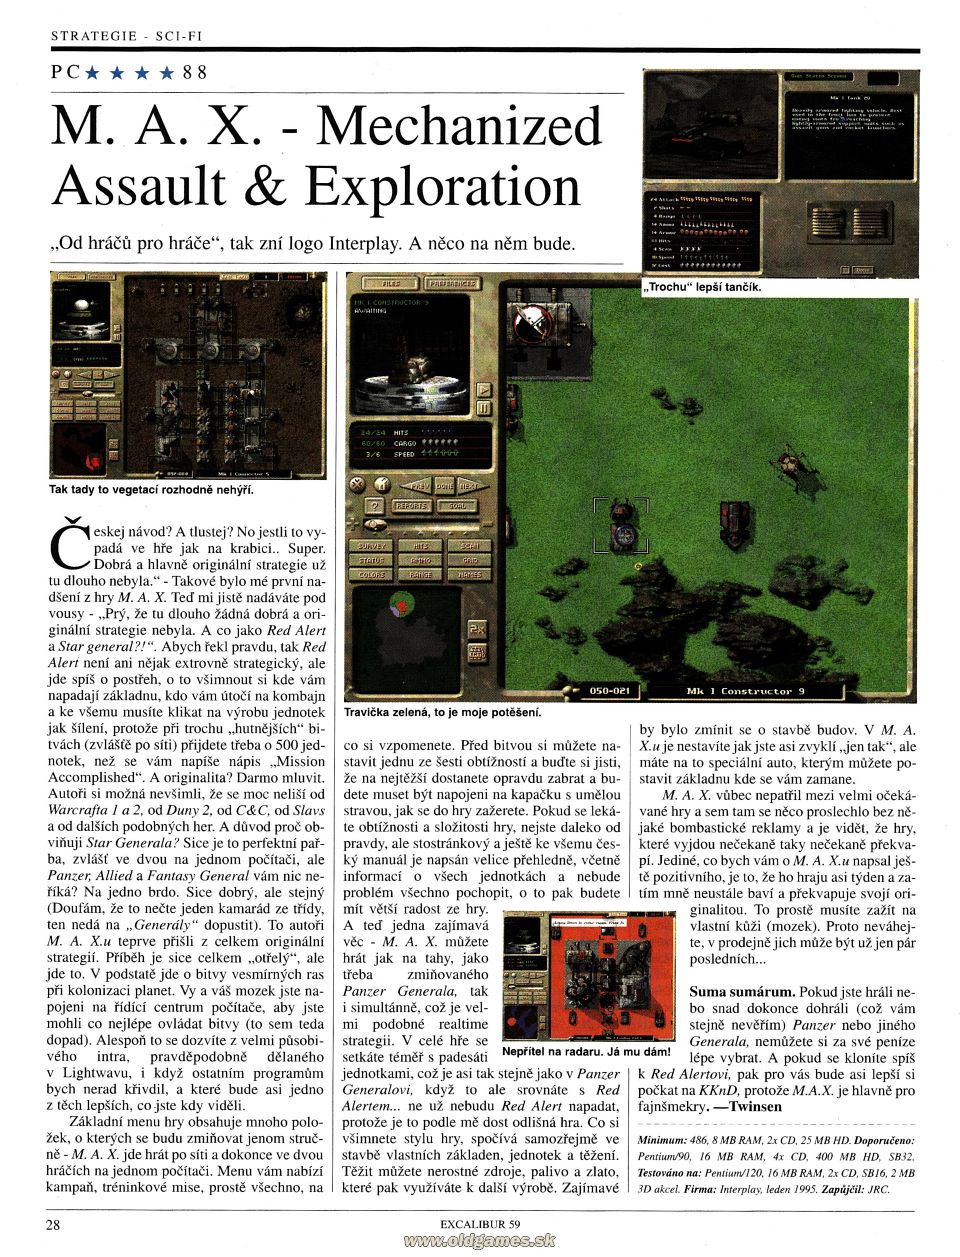 M.A.X. - Mechanized Assault & Exploration